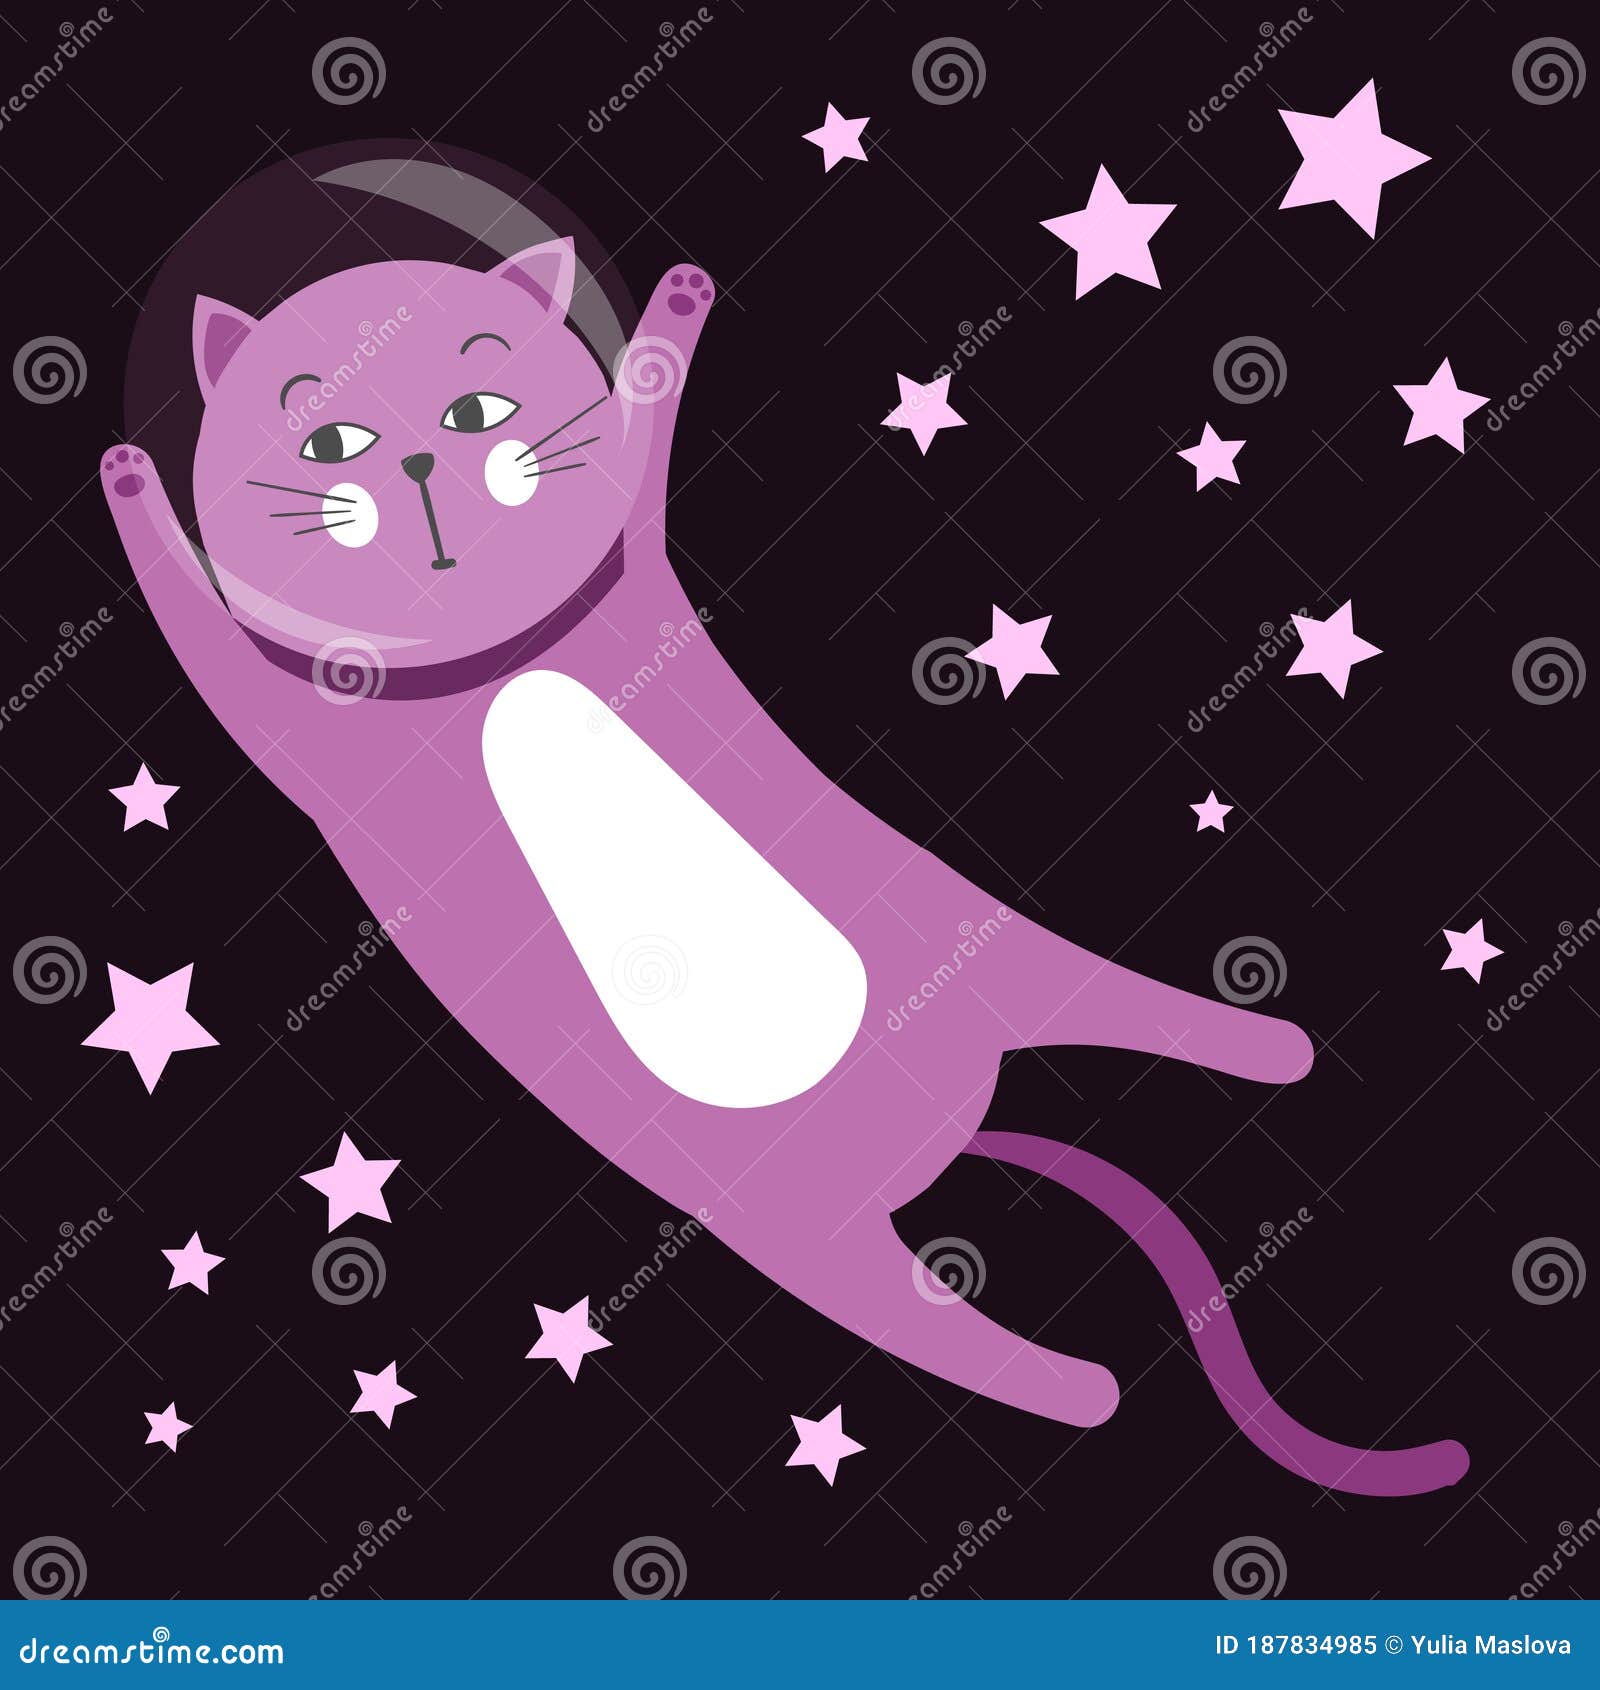 Cute Cartoon Cat Flies in Space. Cat Astronaut. Starry Sky Stock Vector ...